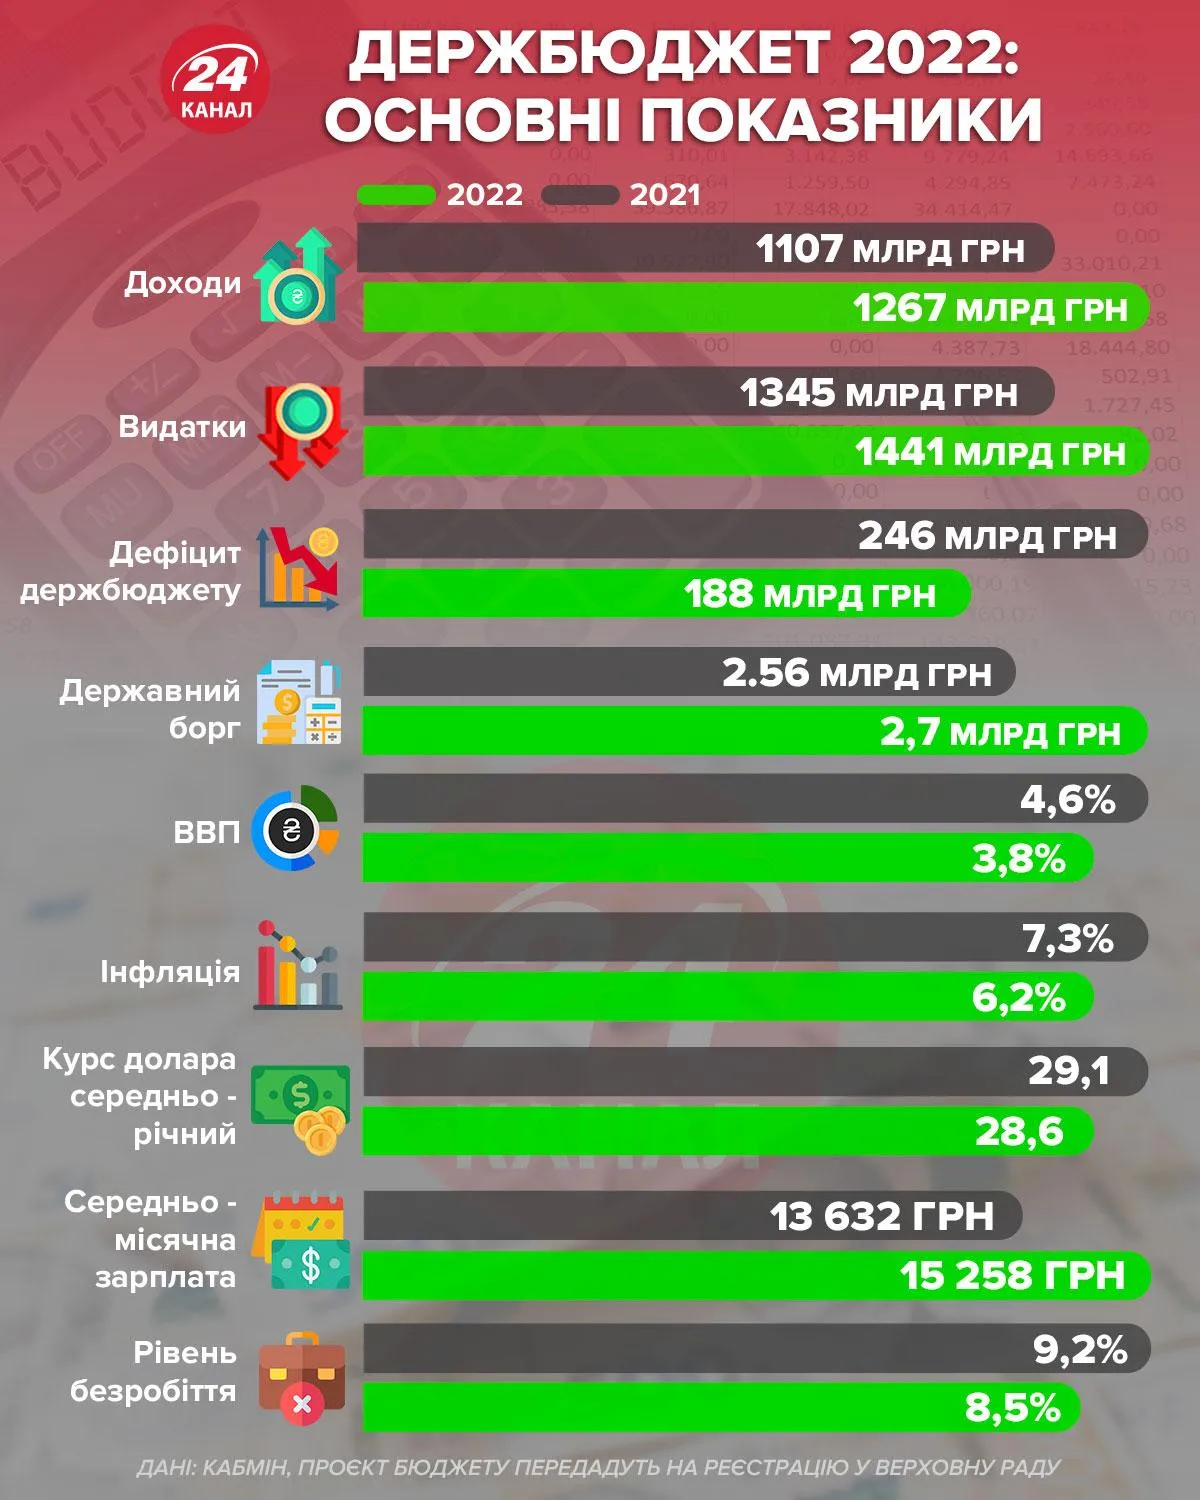 Основные показатели госбюджета-2022 / Инфографика 24 канала